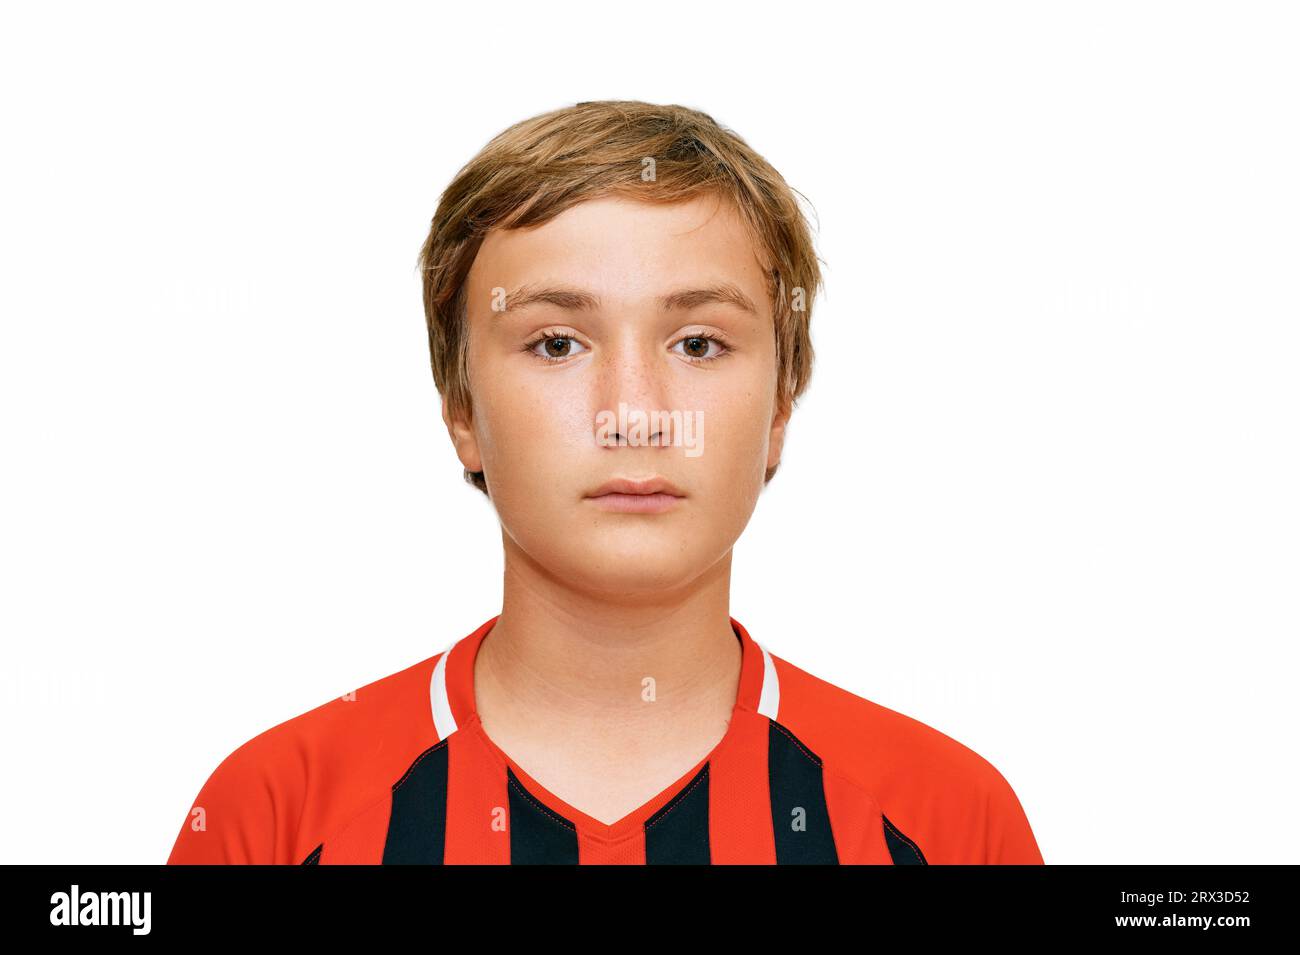 Ritratto ravvicinato di un ragazzo adolescente di 12 - 13 anni che indossa l'uniforme da calcio Foto Stock